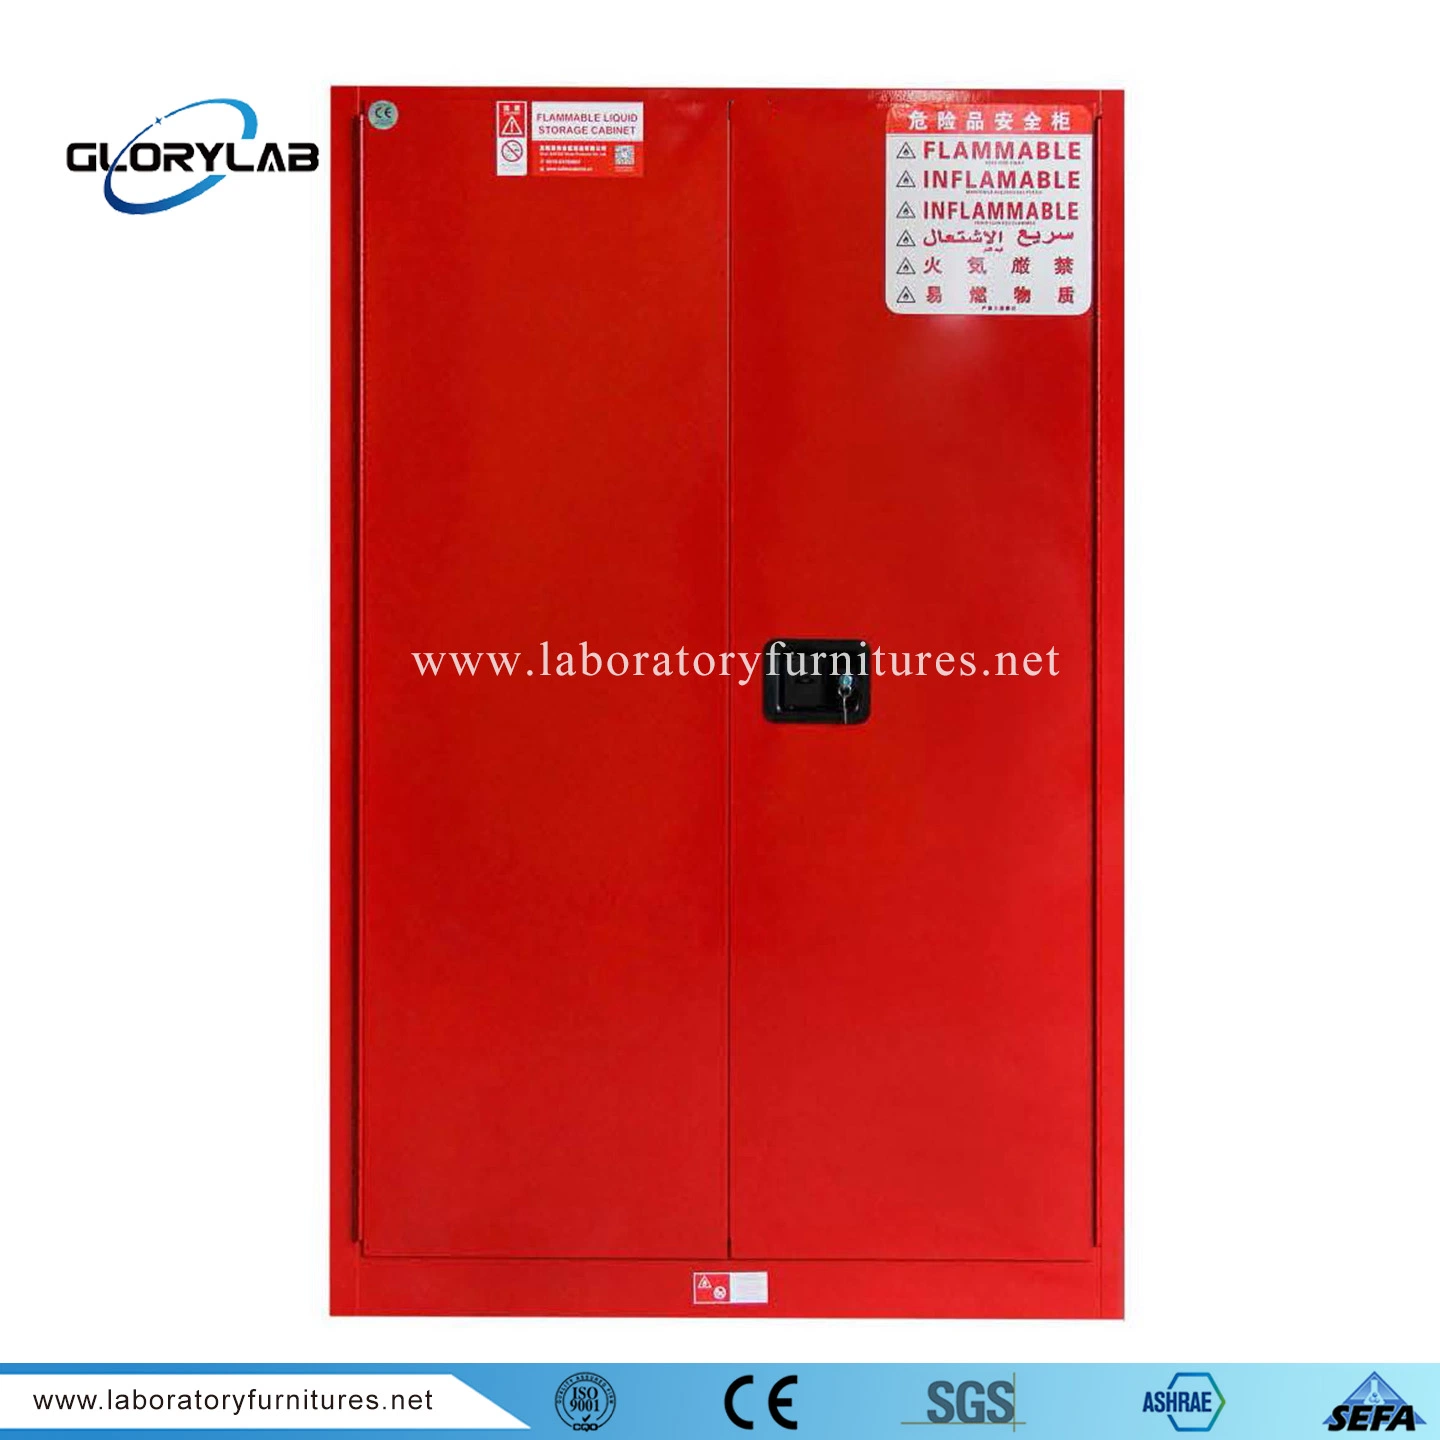 Пожарный шкаф из нержавеющей стали для промышленных лабораторий огнестойкий шкаф для огнеопасных материалов (JH9000R)